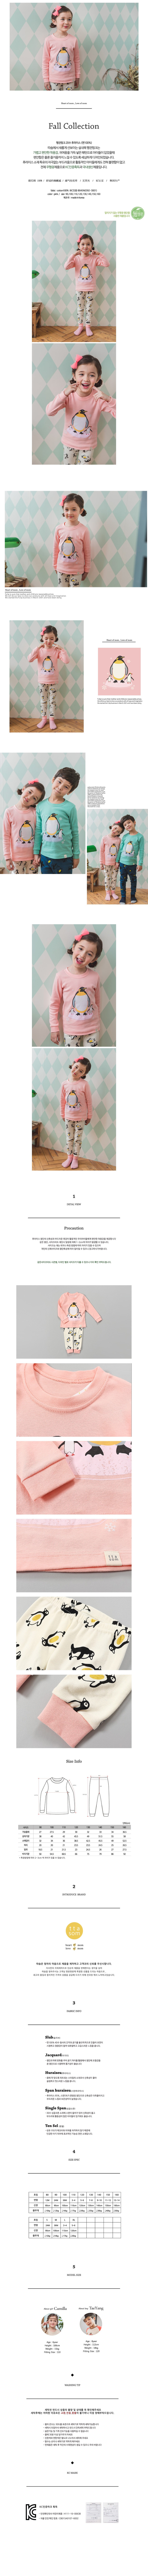 【超值特價】韓國製純棉家居服套組稍厚款(上衣+褲子)國王企鵝-粉色